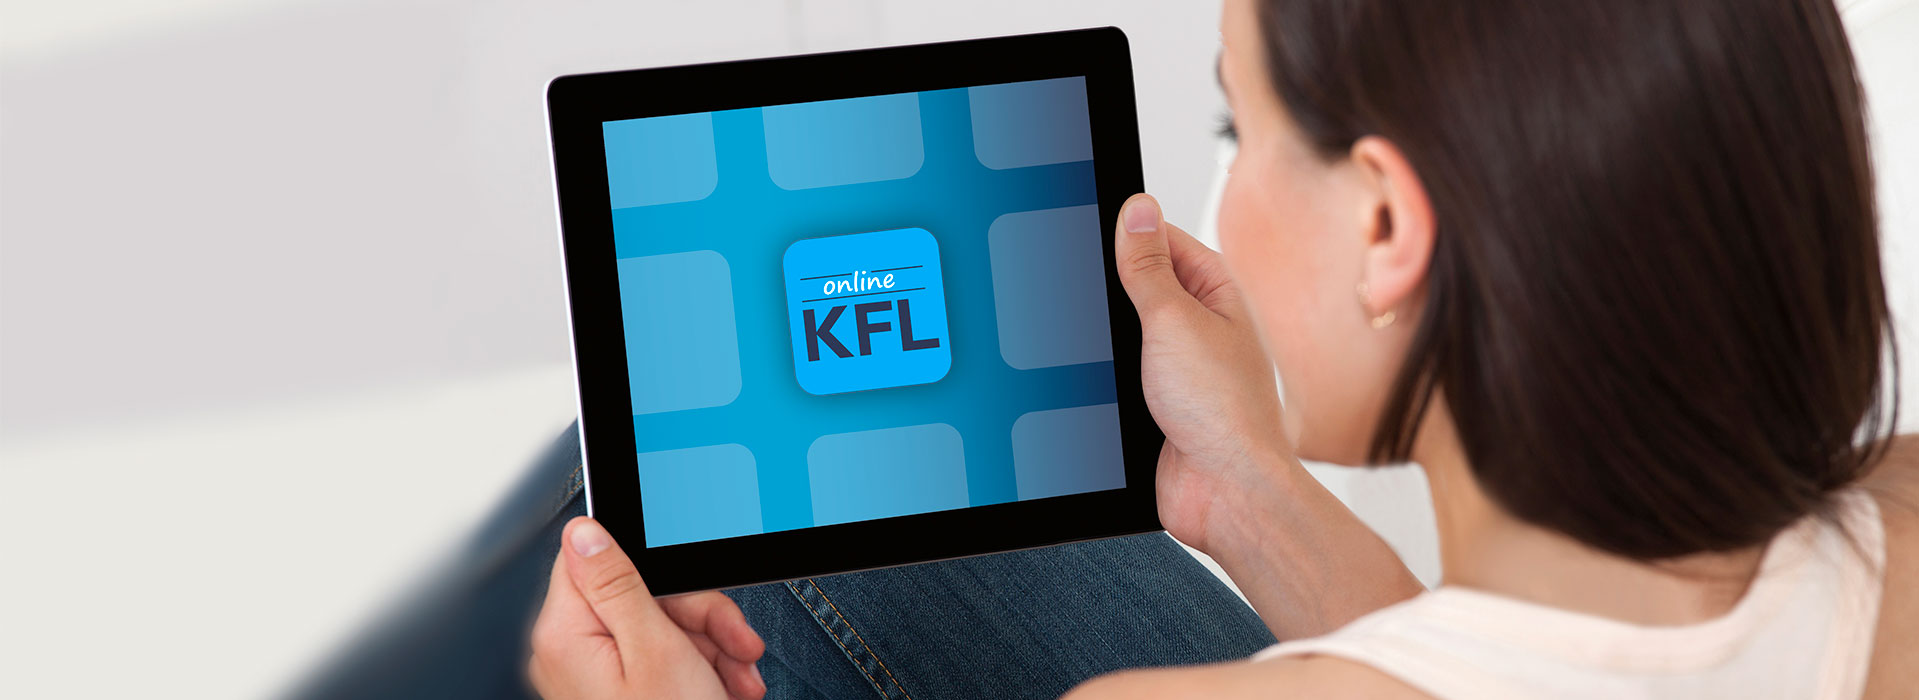 Frau mit Tablet, welches KFL Online anzeigt